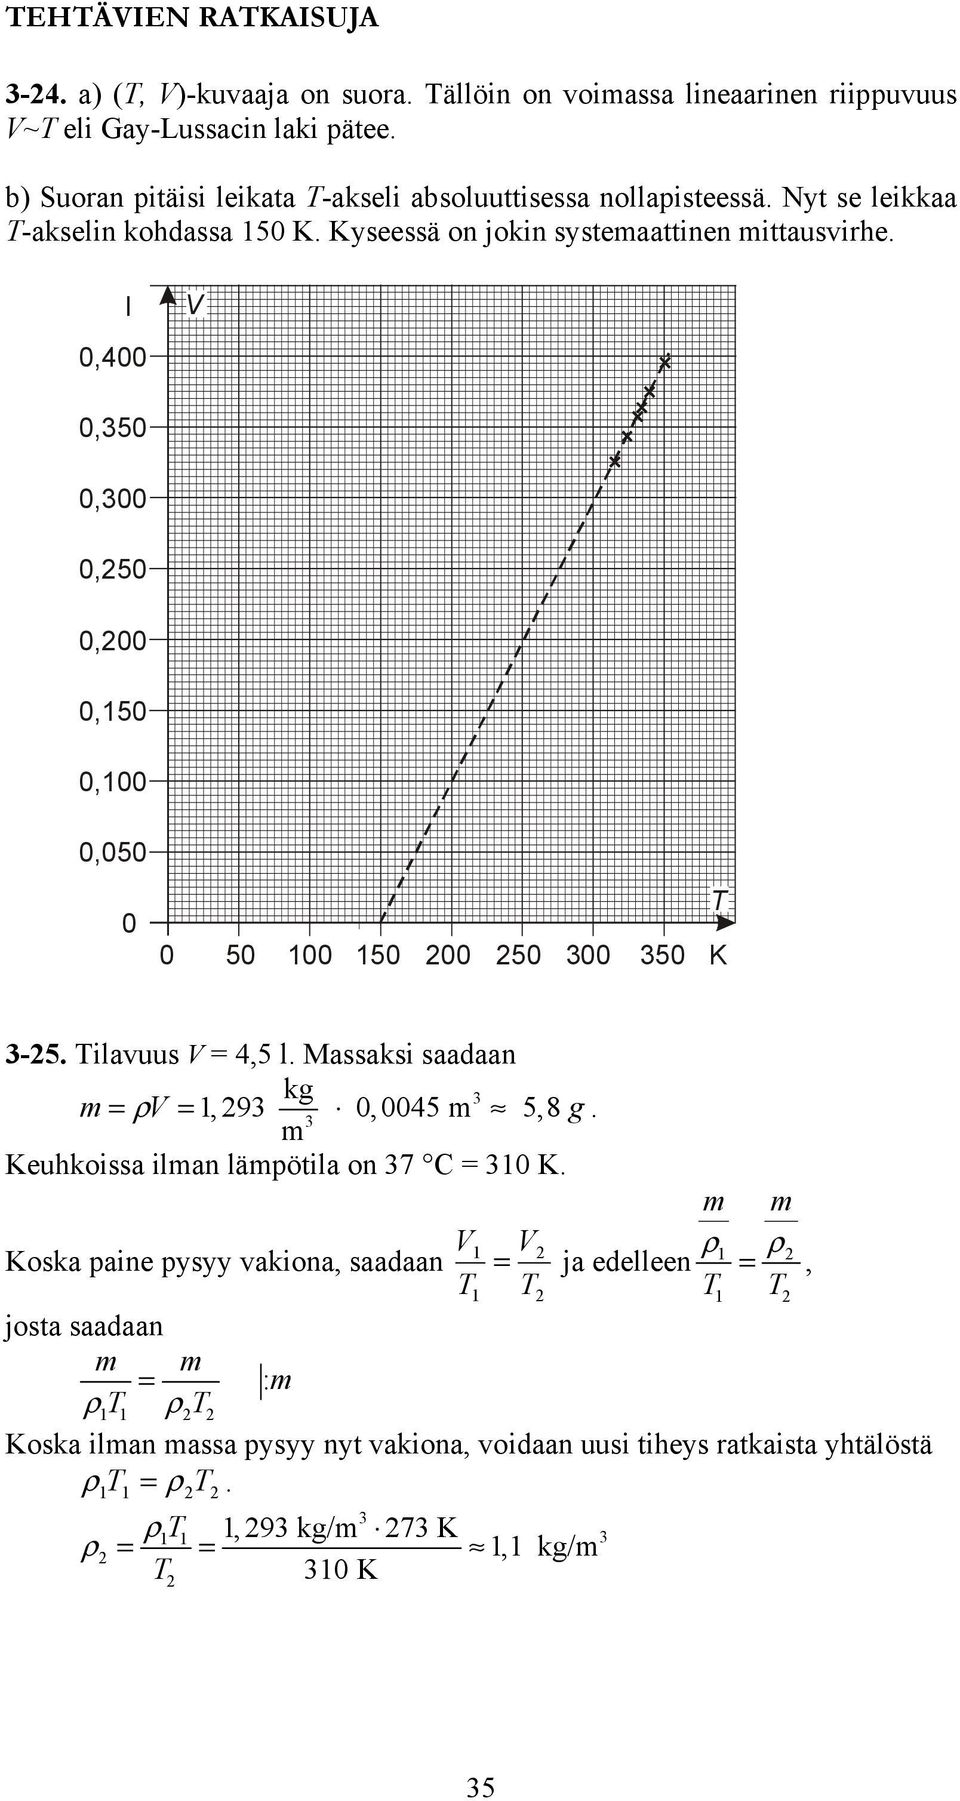 K -5 Tilavuus = 4,5 l Massaksi saadaan kg = ρ =,9,45 5,8 g Keuhkissa ilan läötila n 7 C = K ρ Kska aine ysyy vakina, saadaan = ja edelleen ρ